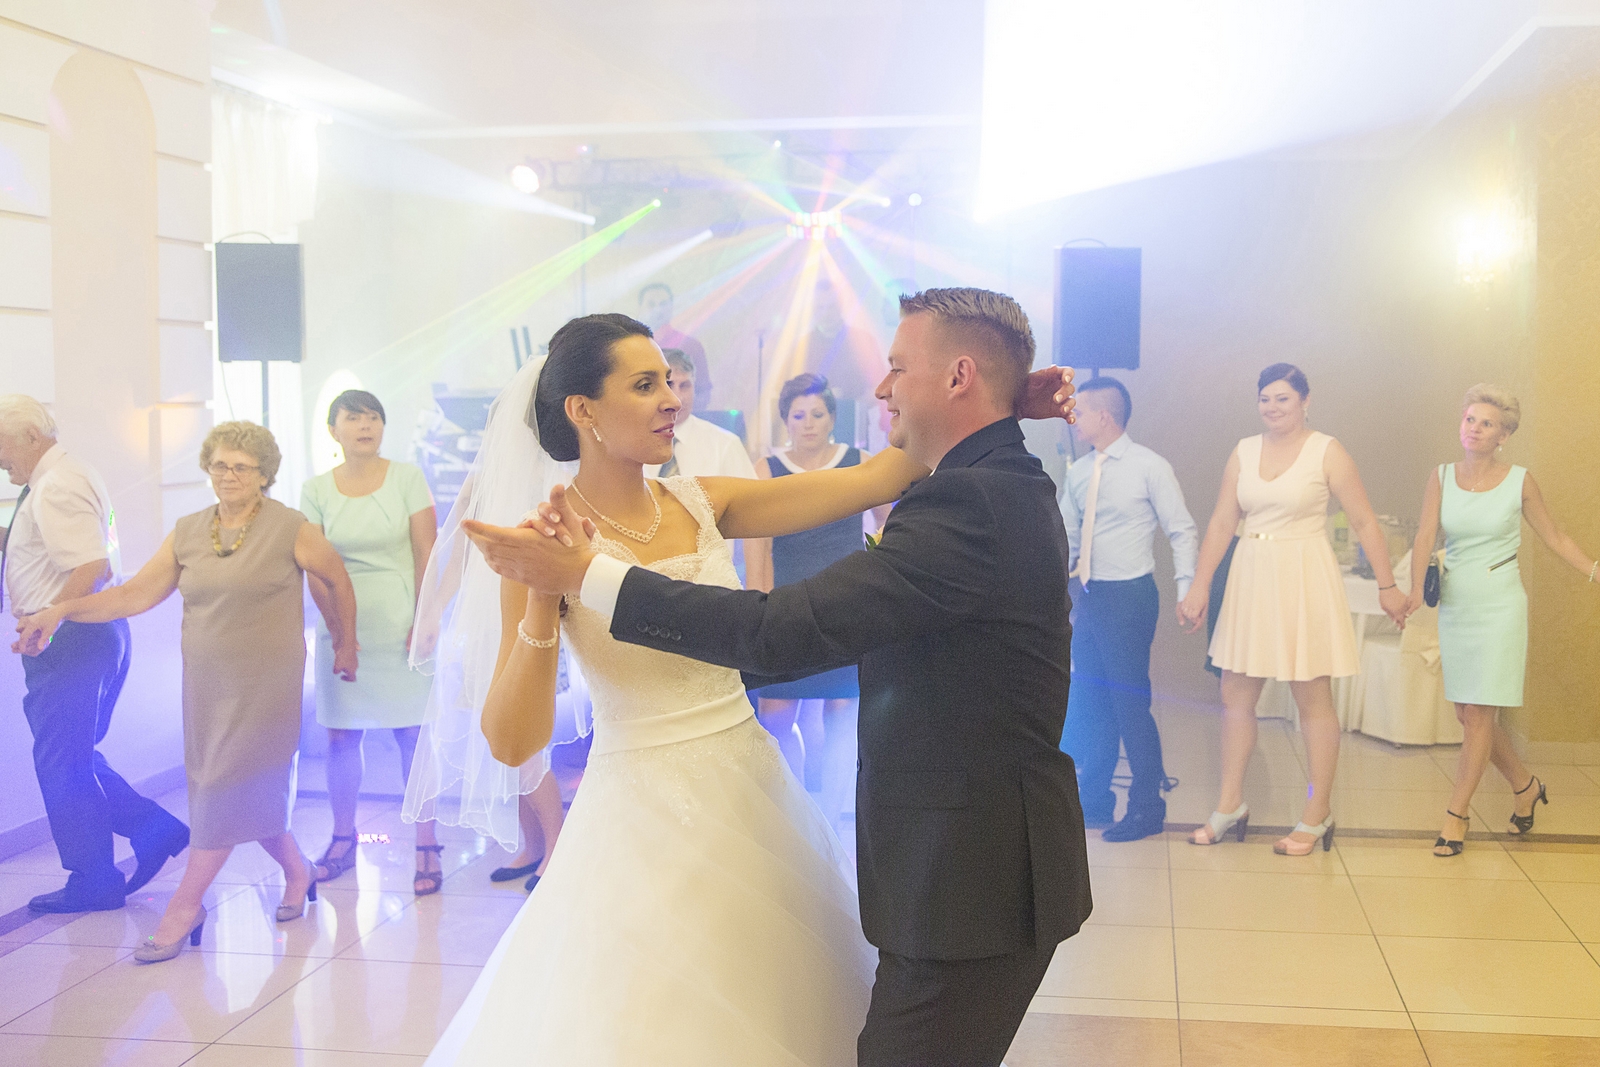 Fotograf ślubny wykona zdjęcia plenerowe lub zdjęcia na weselu na zlecenie pary młodej